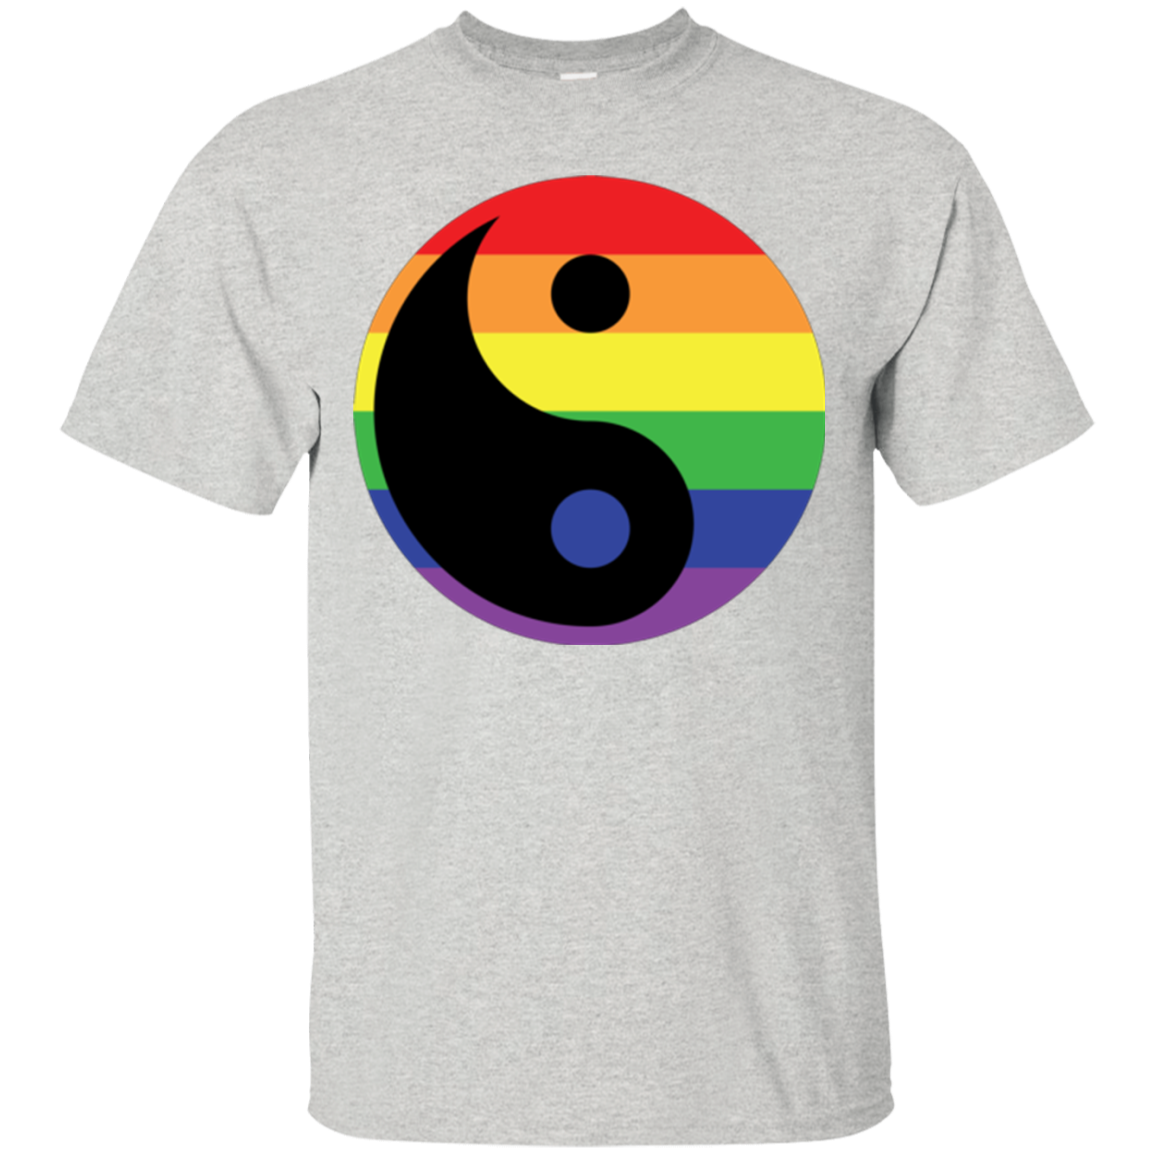 Rainbow Yin Yang Gay Pride Shirt LGBT Pride shirt